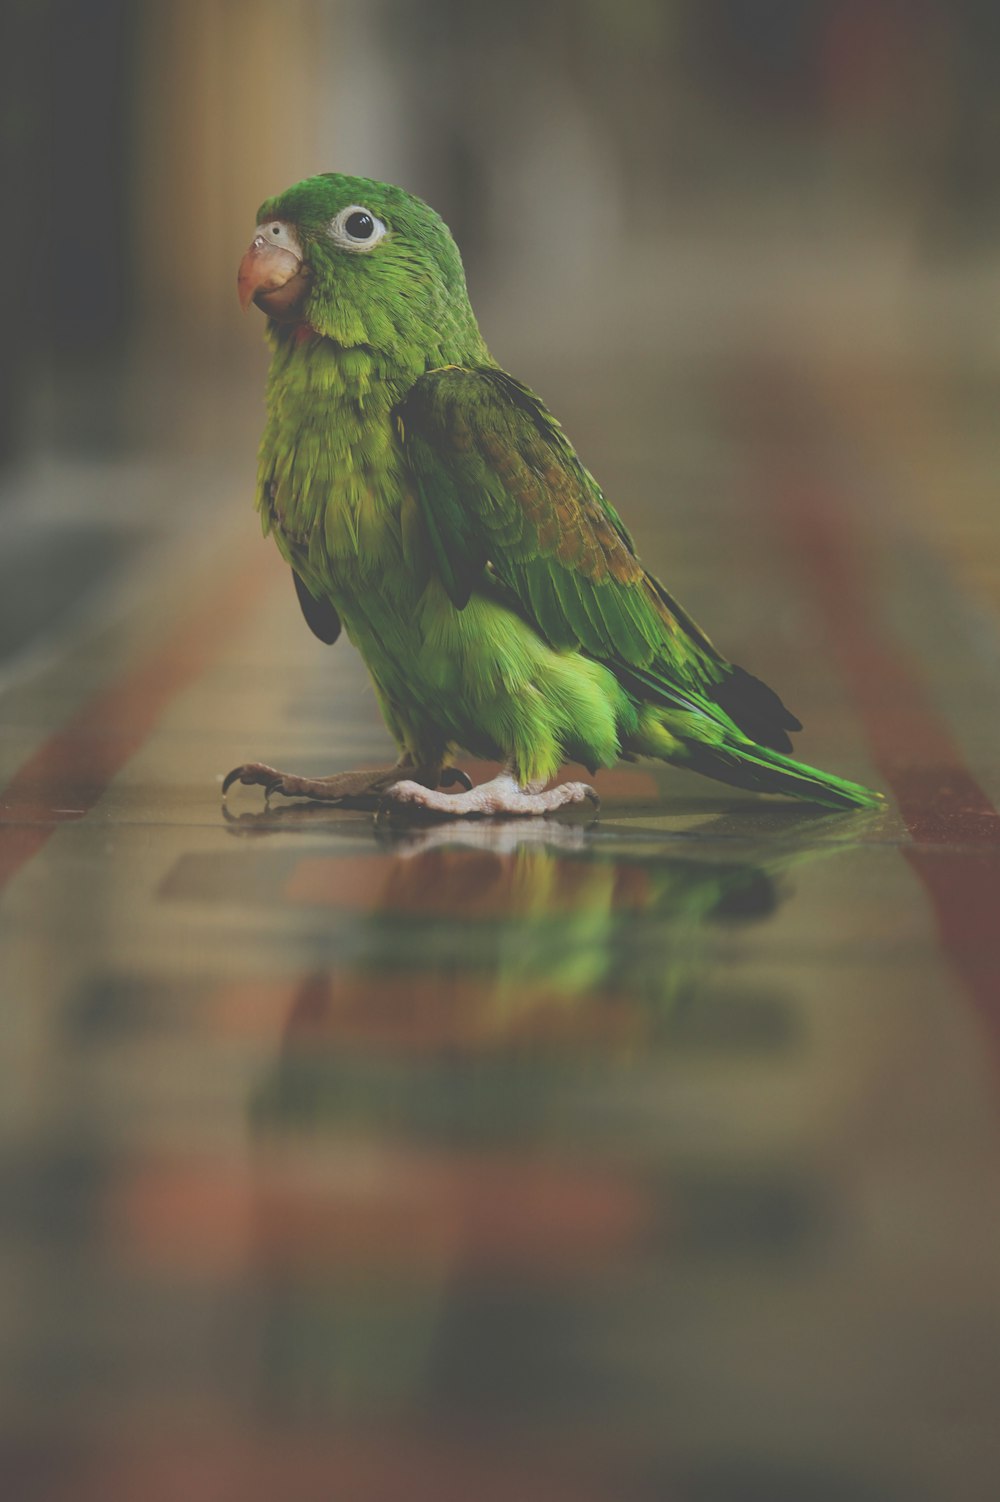 pájaro verde parado sobre una superficie marrón